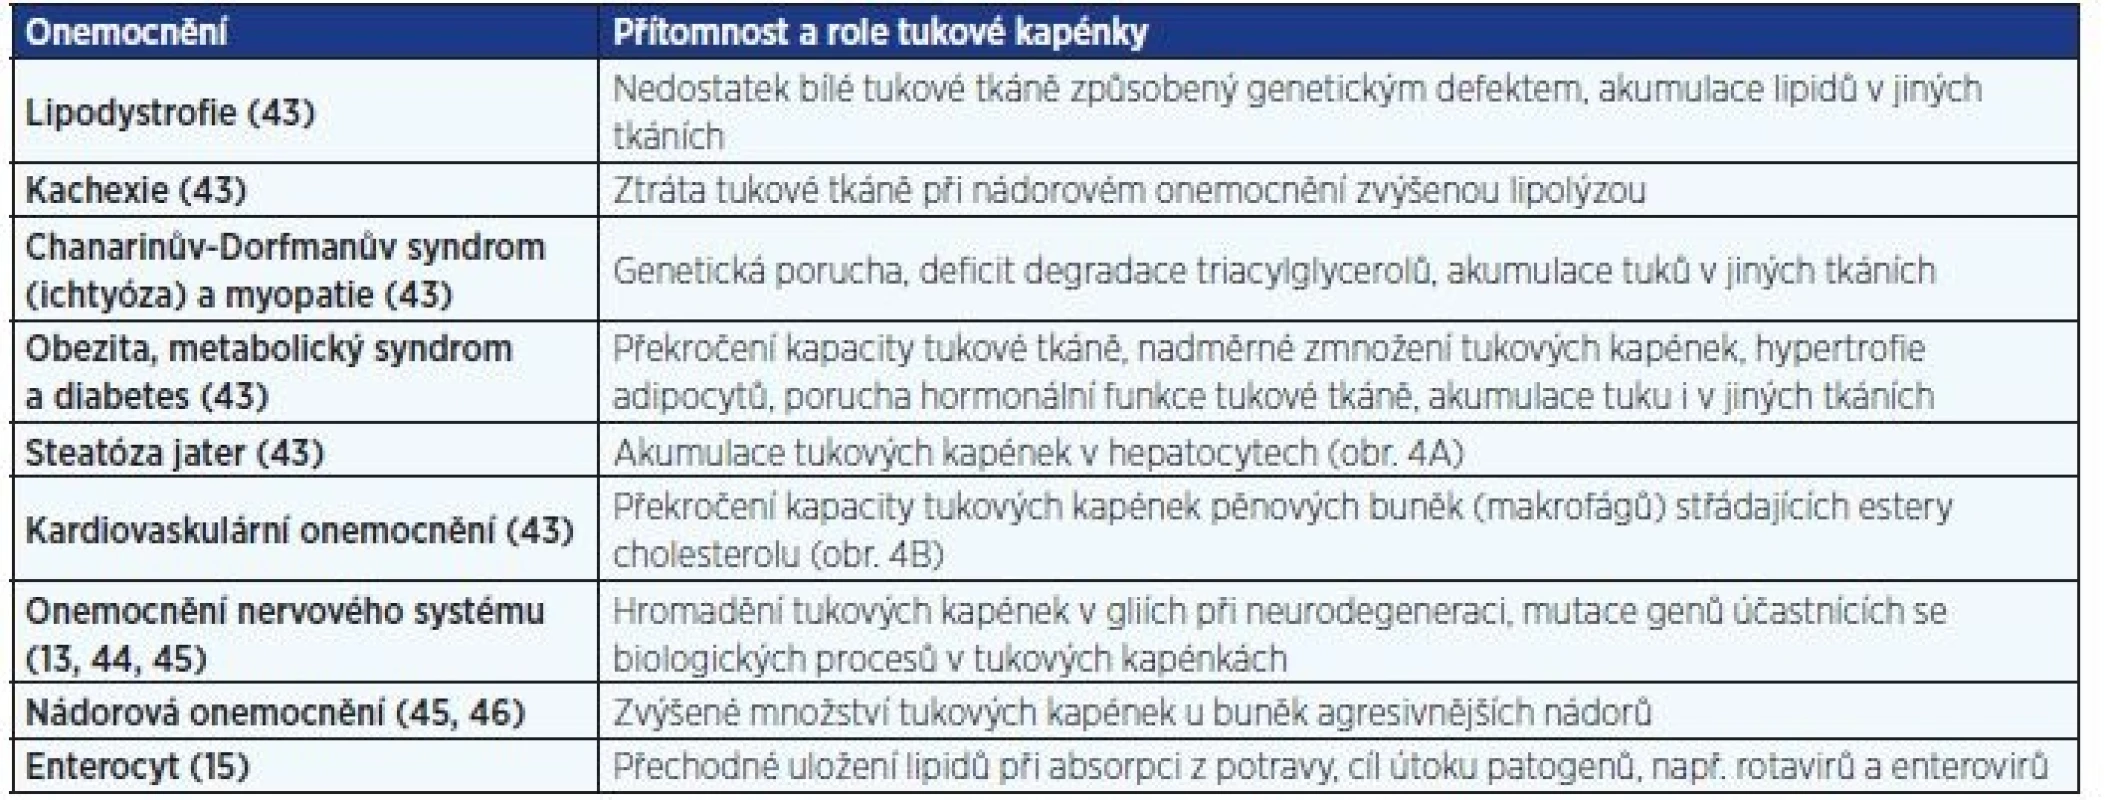 Patologické stavy asociované s dysfunkcí tukových kapének